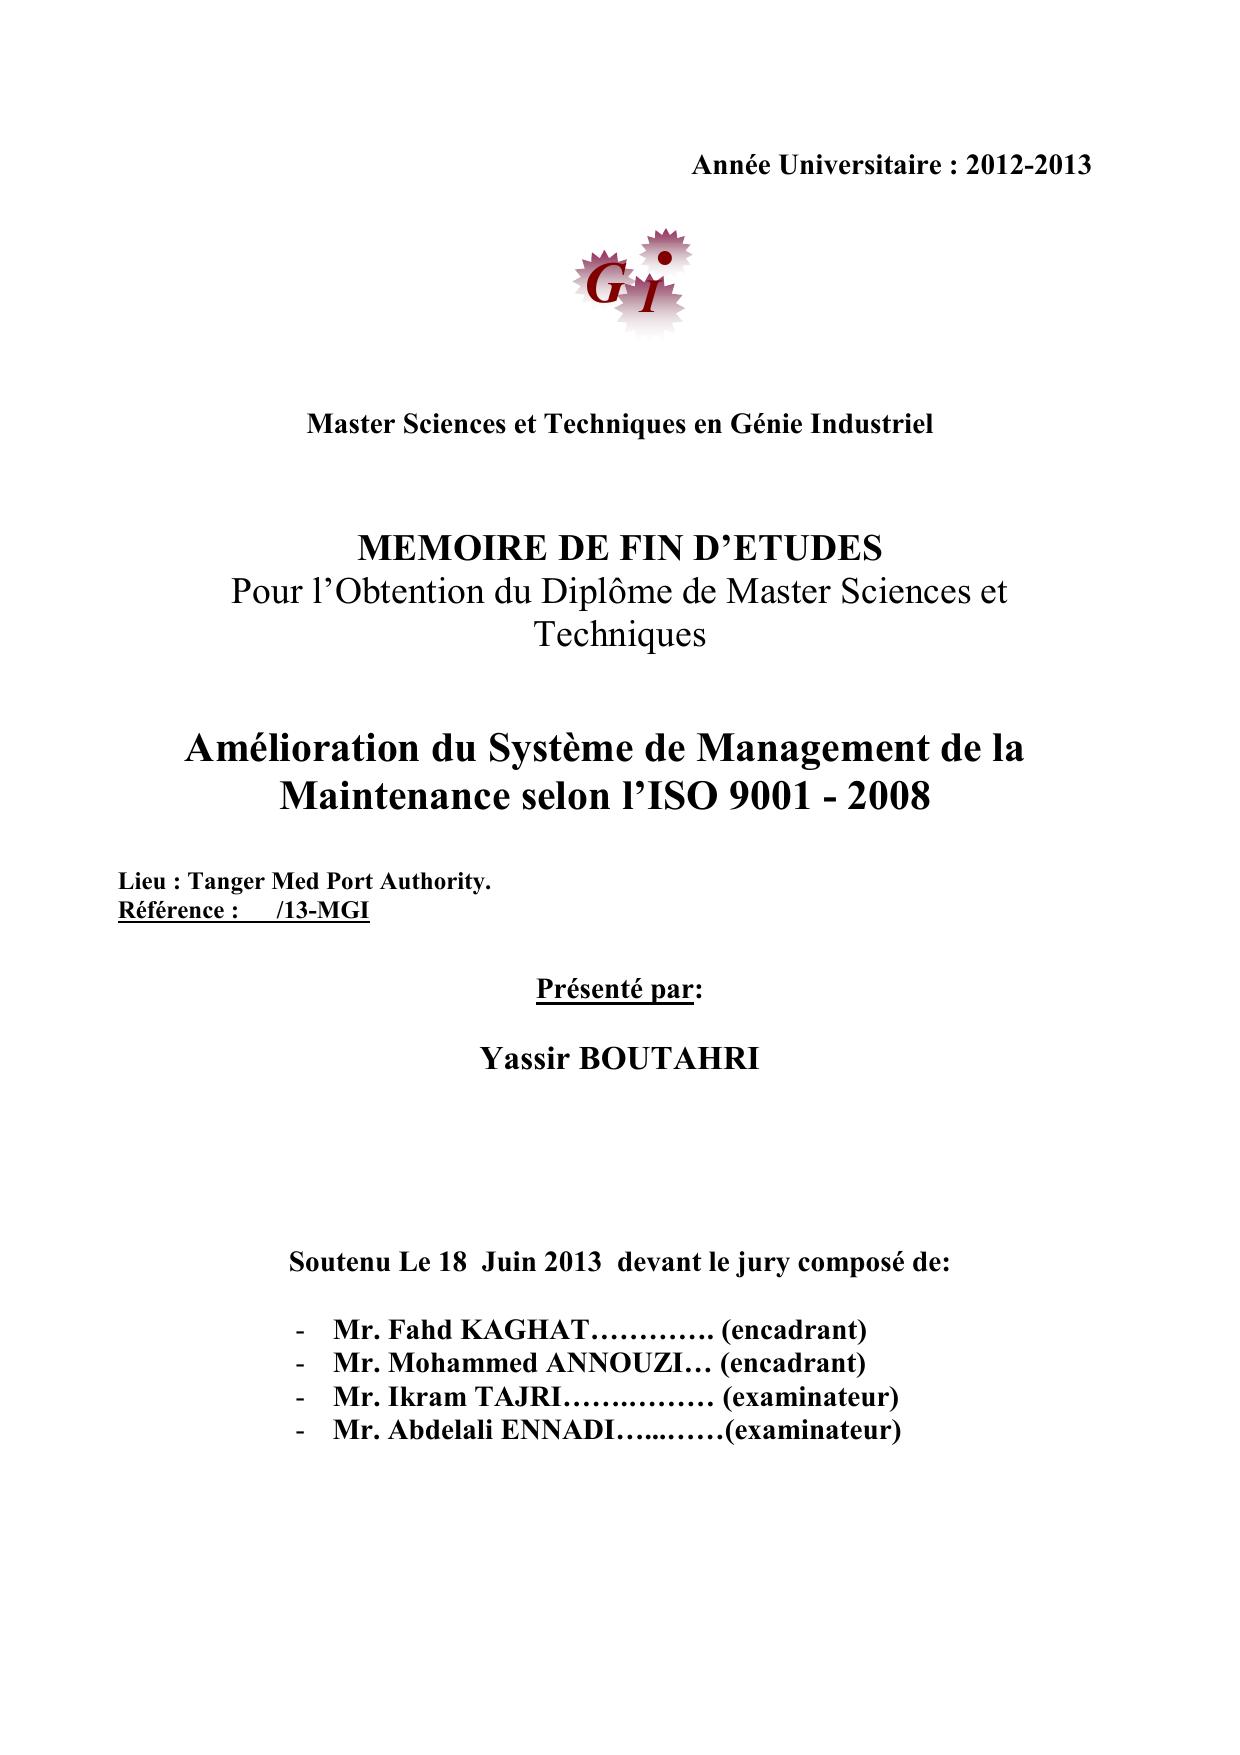 Amélioration du Système de Management de la Maintenance selon l’ISO 9001 - 2008